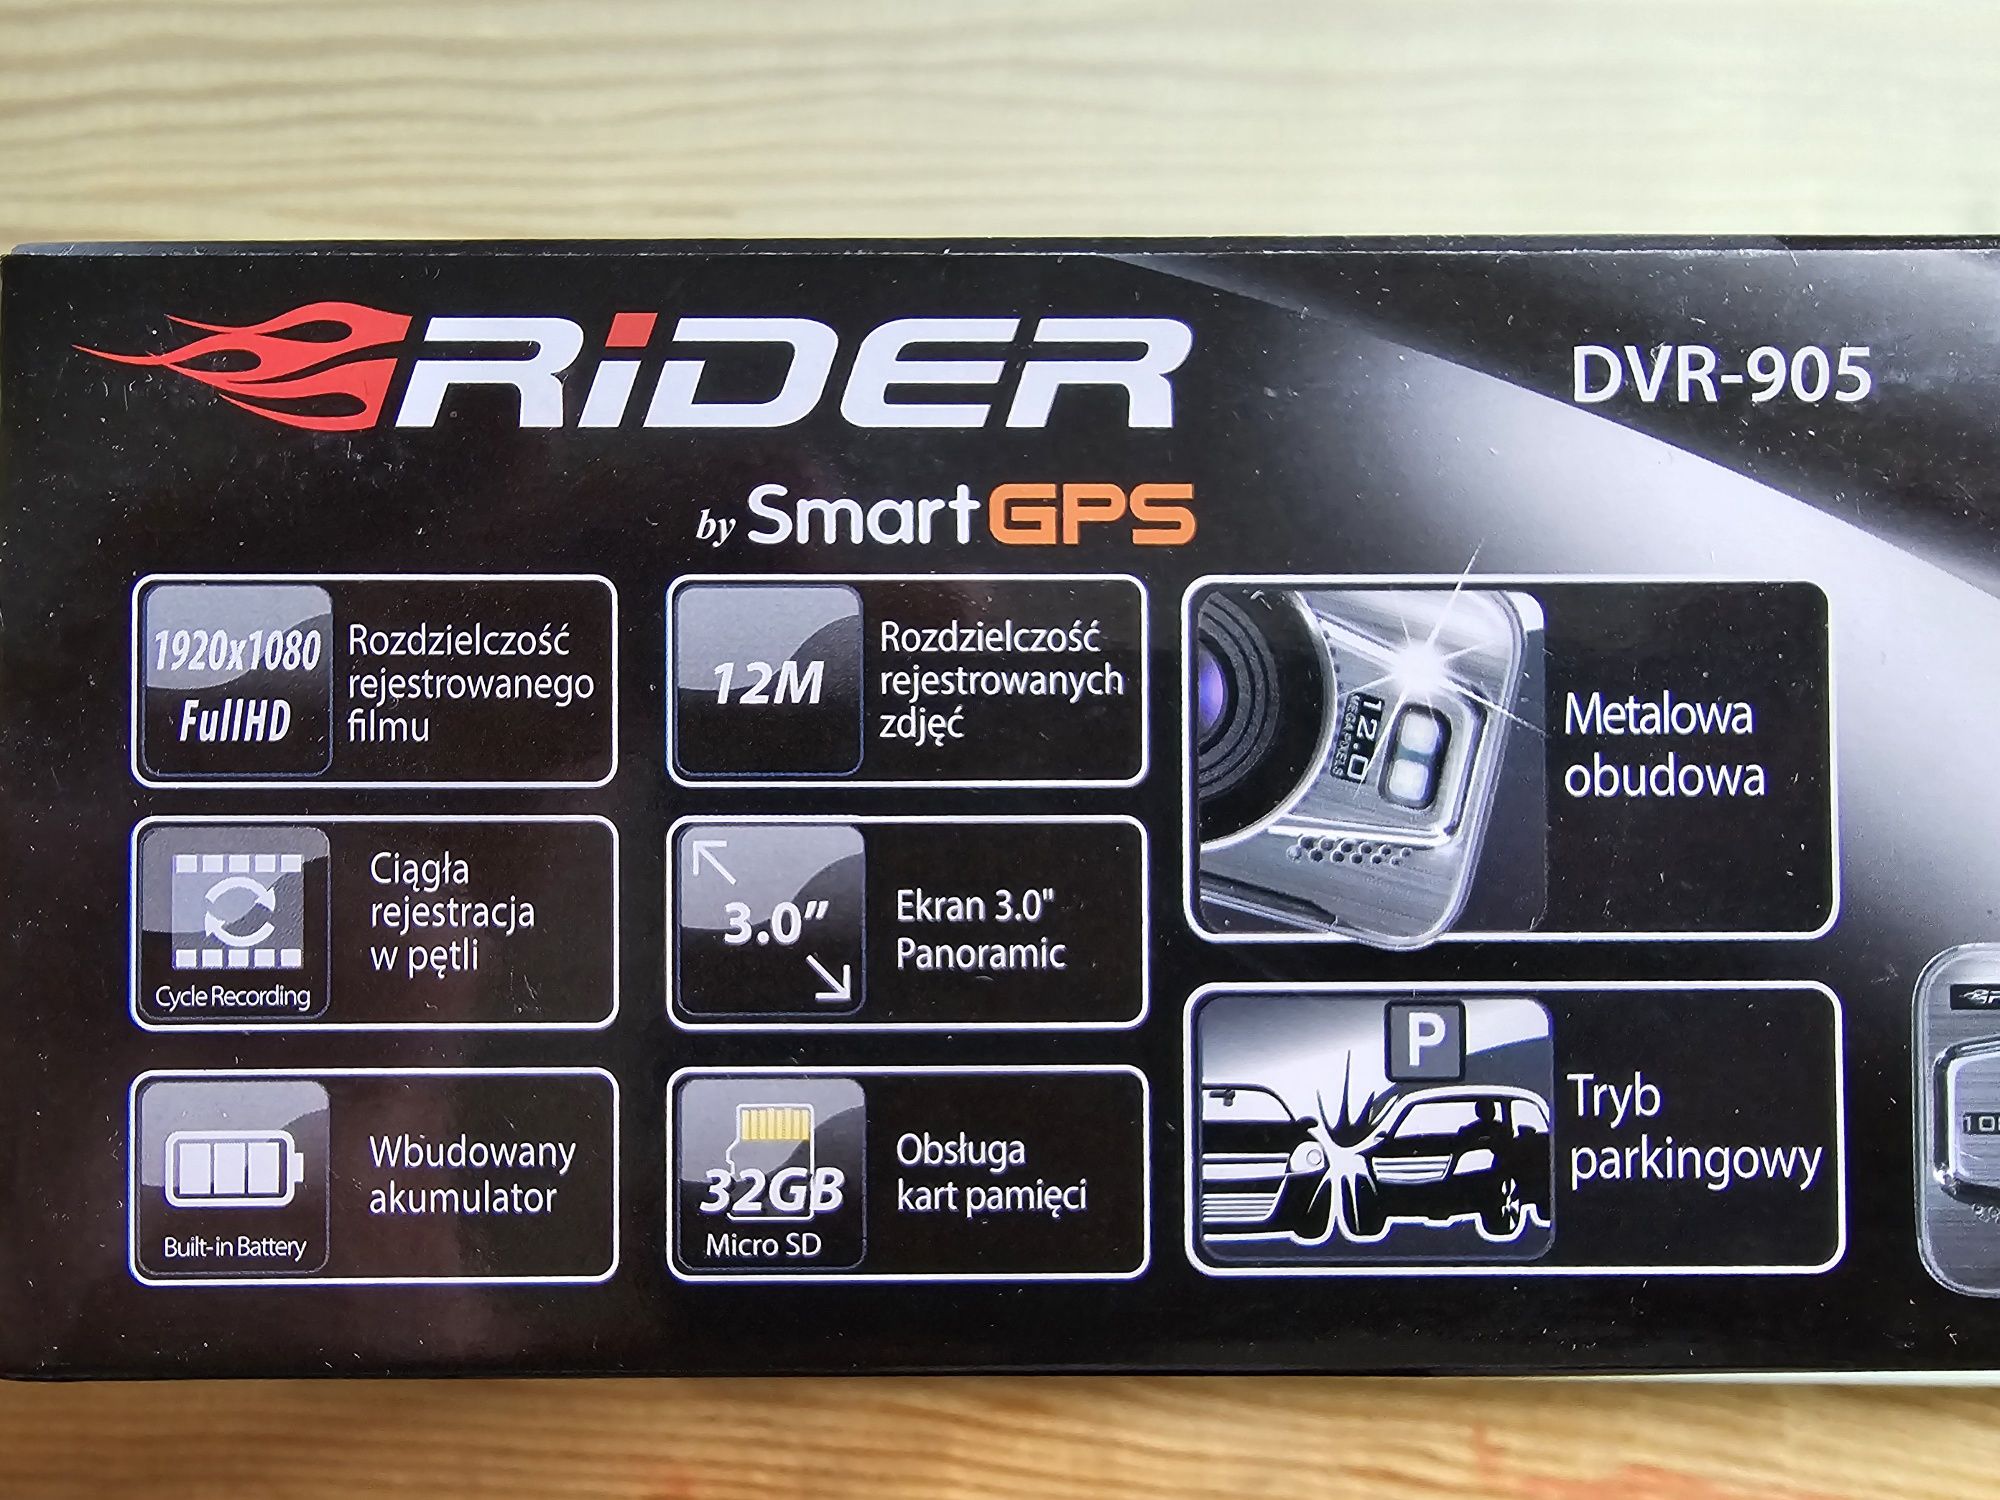 Rider Smart GPS - DVR-905 - wideo rejestrator - nowy!